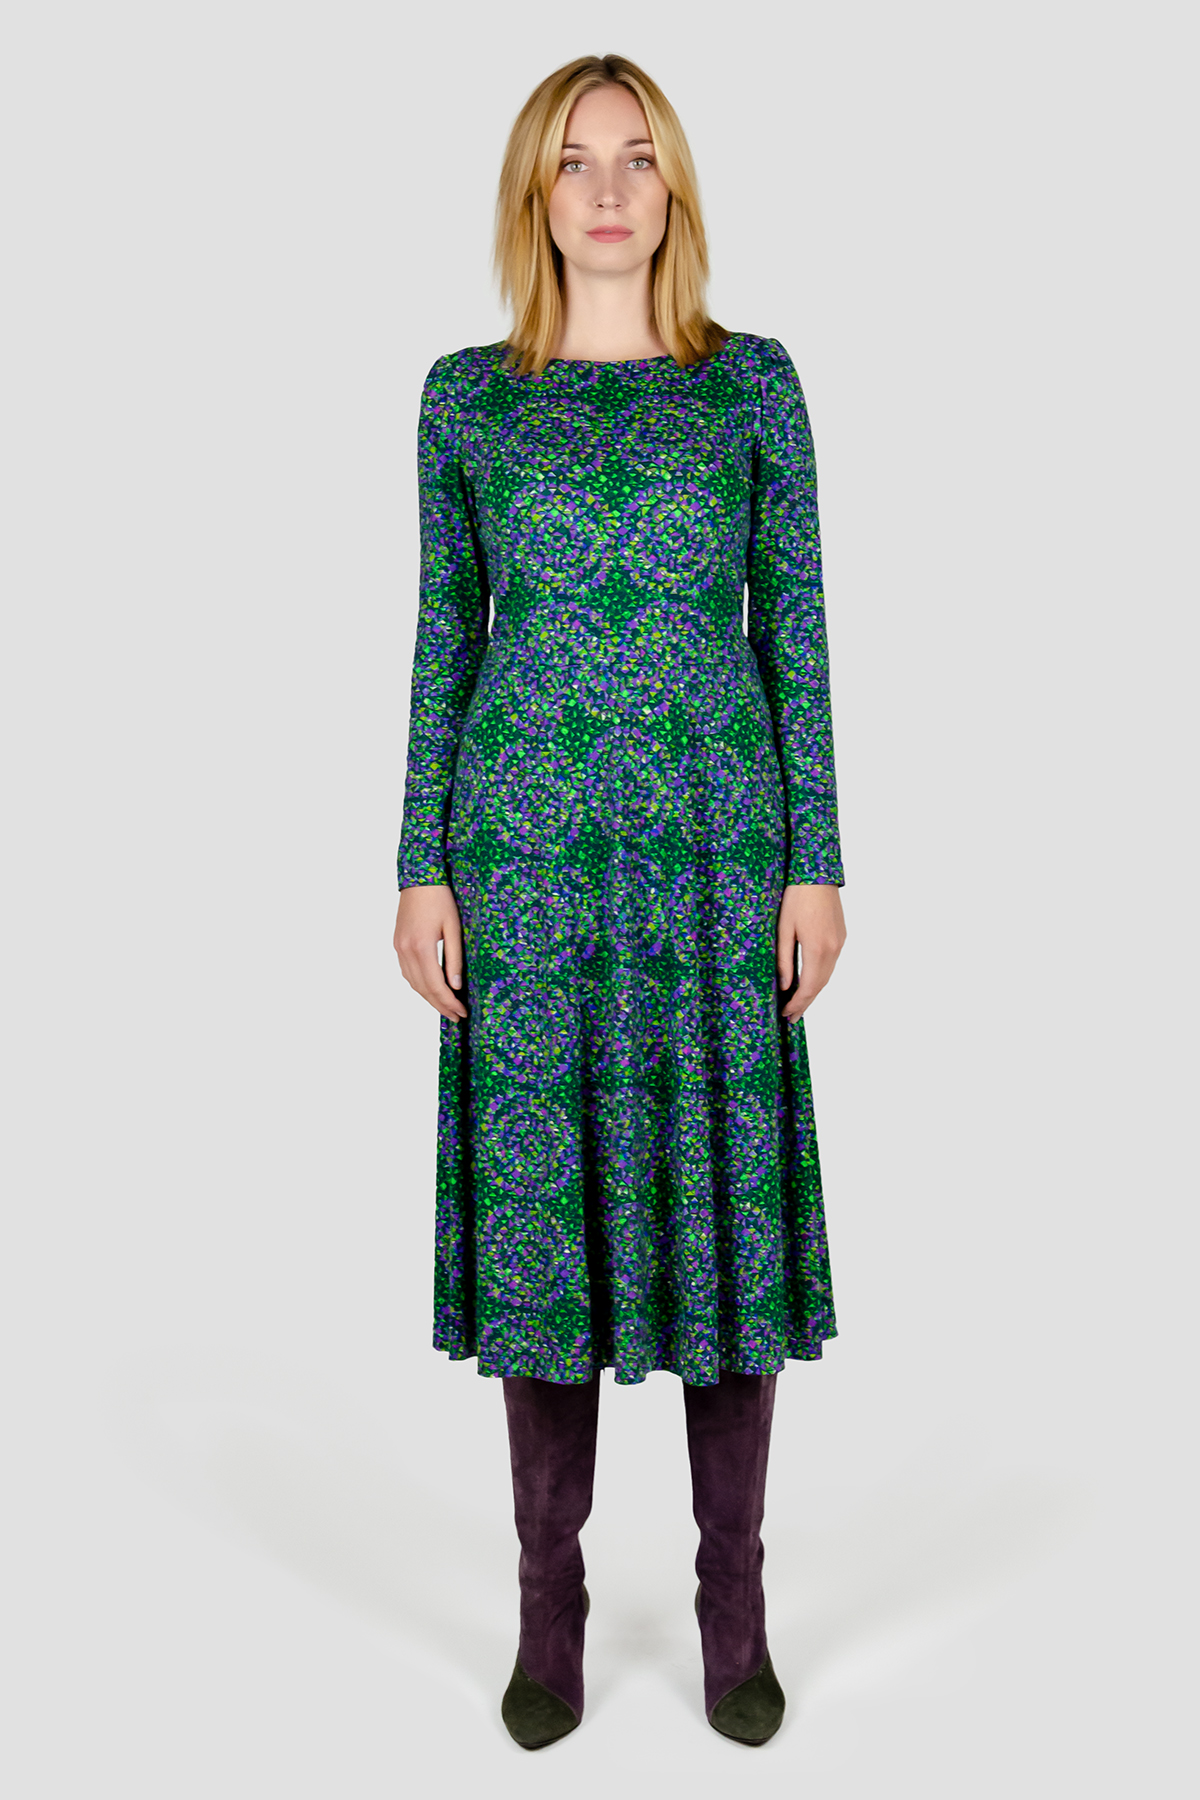 Marokko Kleid Grafisches Muster mit langen Aermeln, weiter Rock Gruen Violett Damen